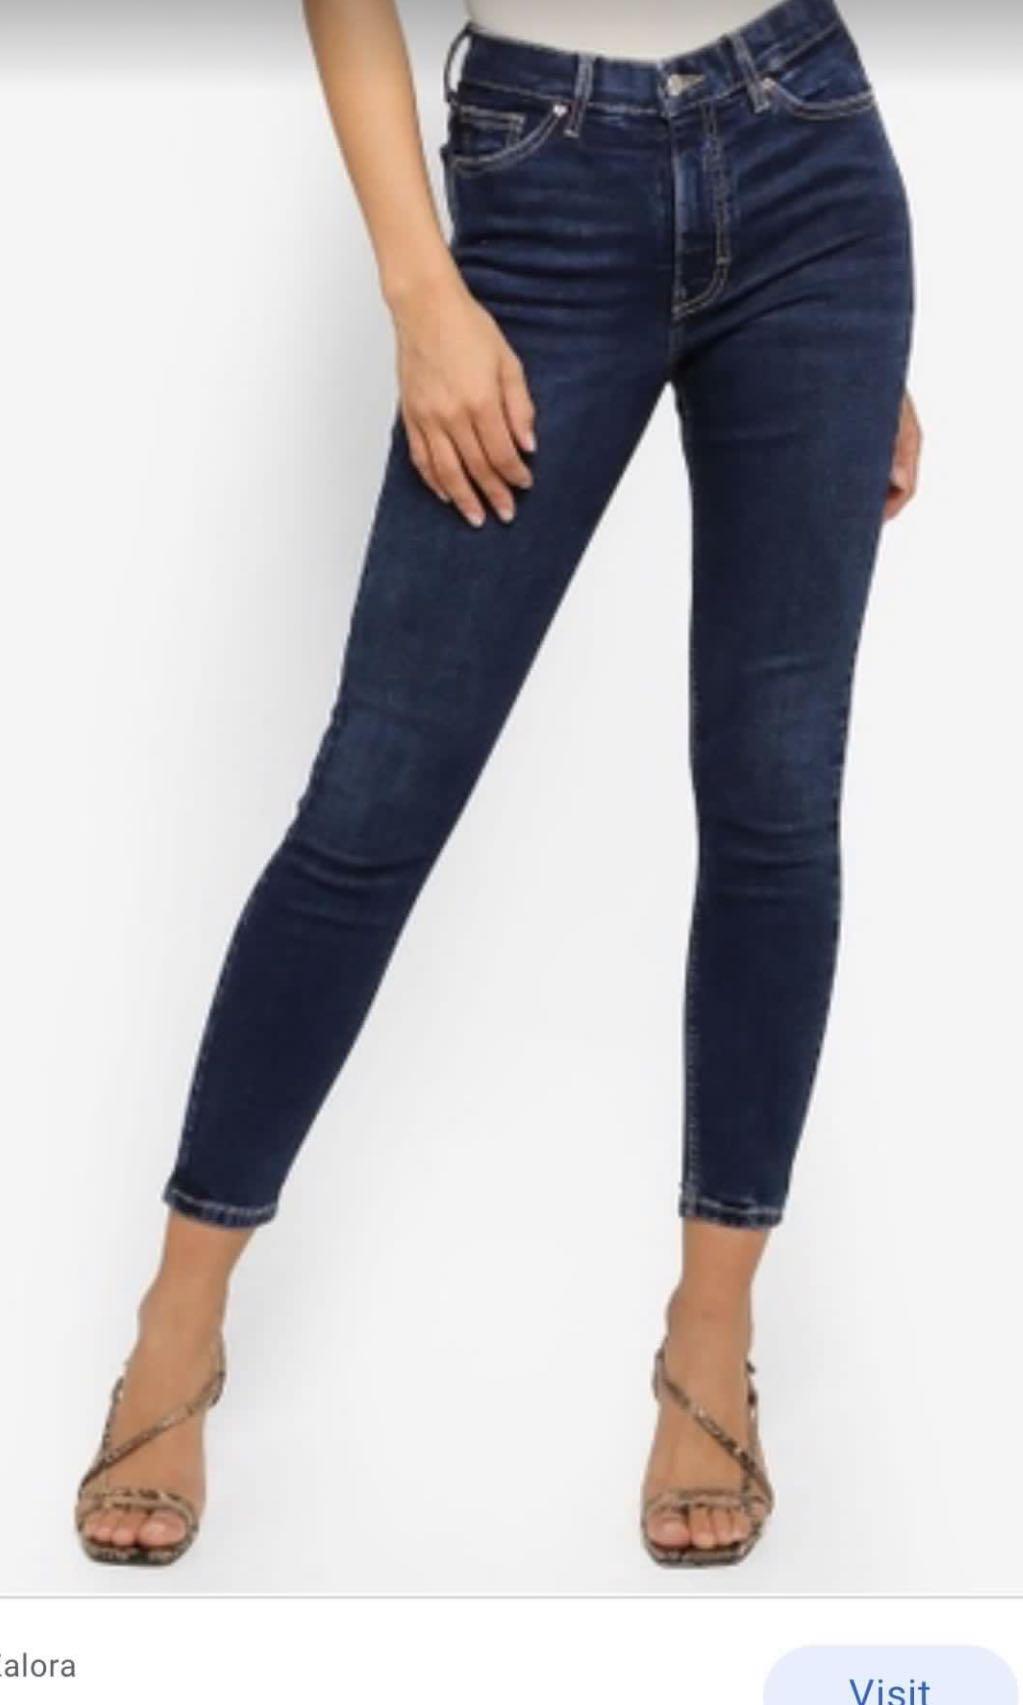 Topshop JAMIE Indigo Skinny Jeans UK8 W26 L32 NEW